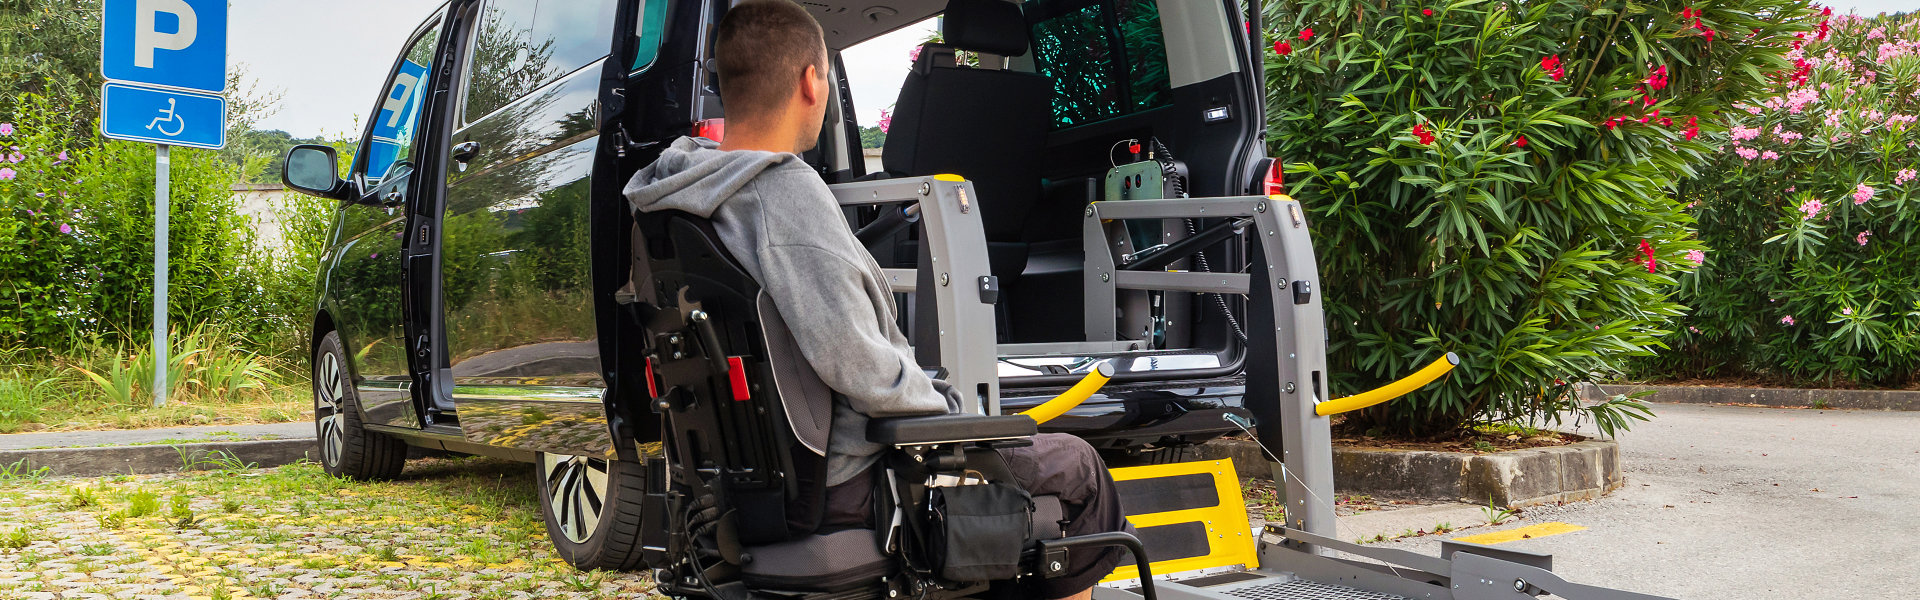 man on wheelchair preparing to board the van